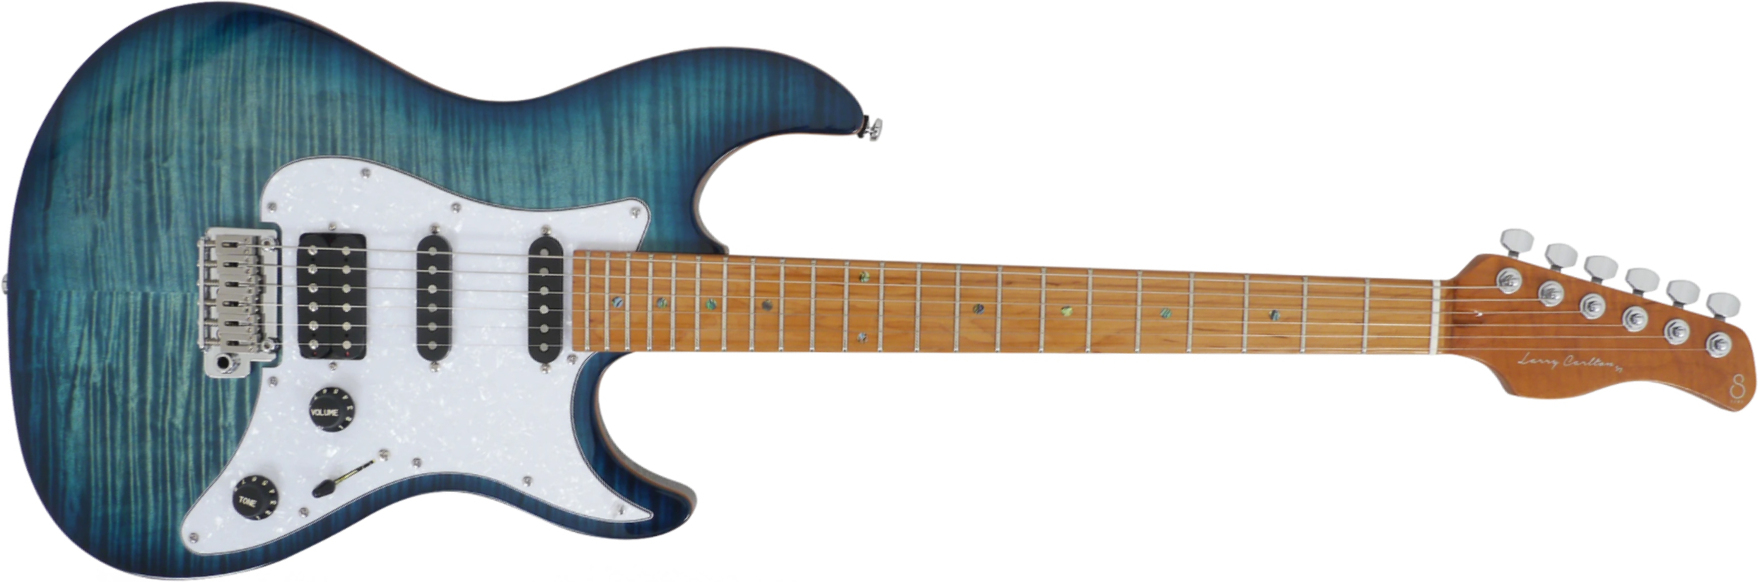 Sire Larry Carlton S7 Fm Signature Hss Trem Mn - Trans Blue - Str shape electric guitar - Main picture